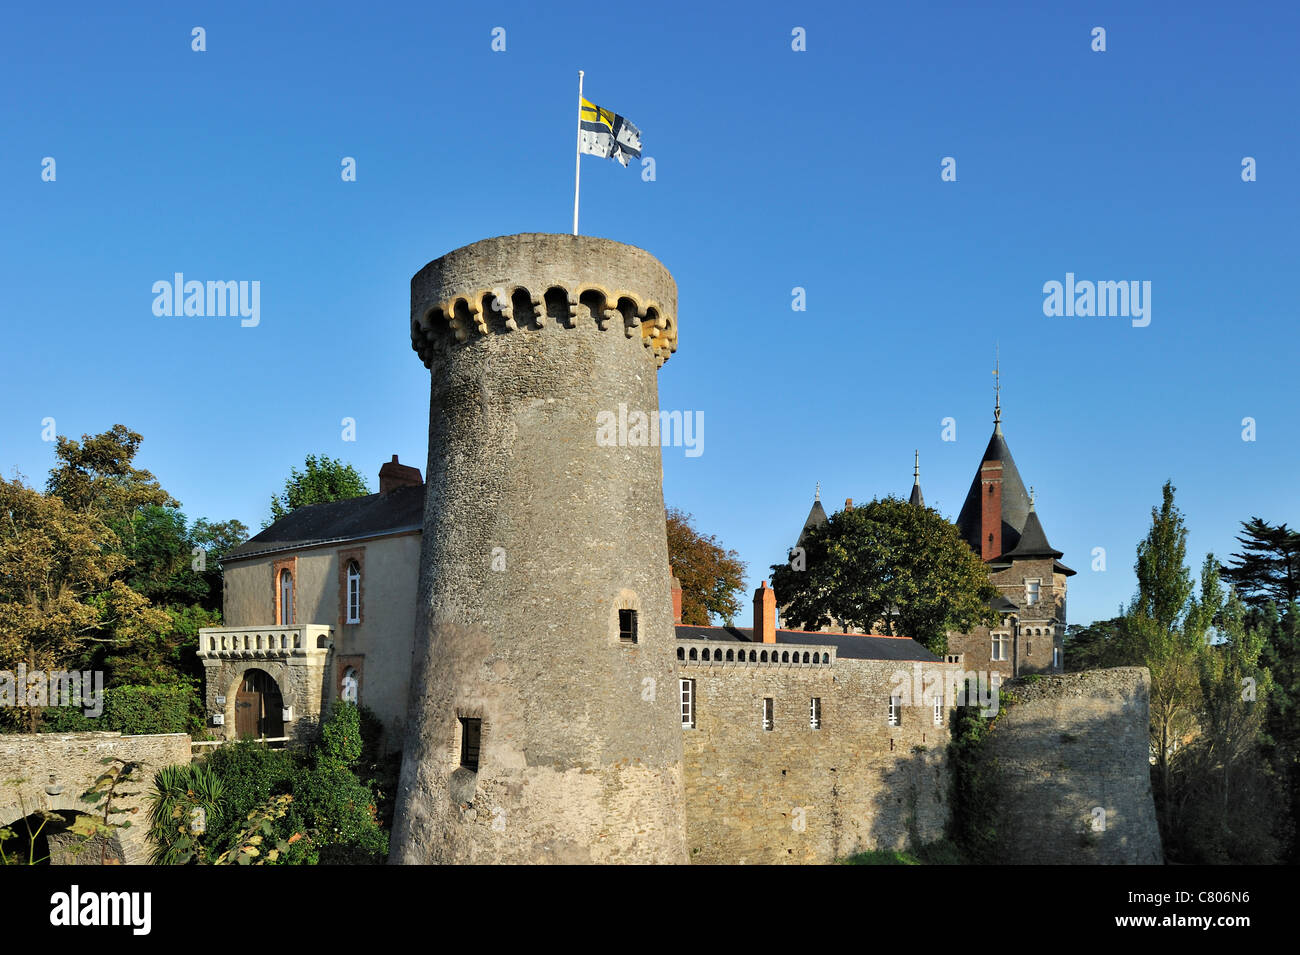 The castle Château de Pornic, Loire-Atlantique, France Stock Photo